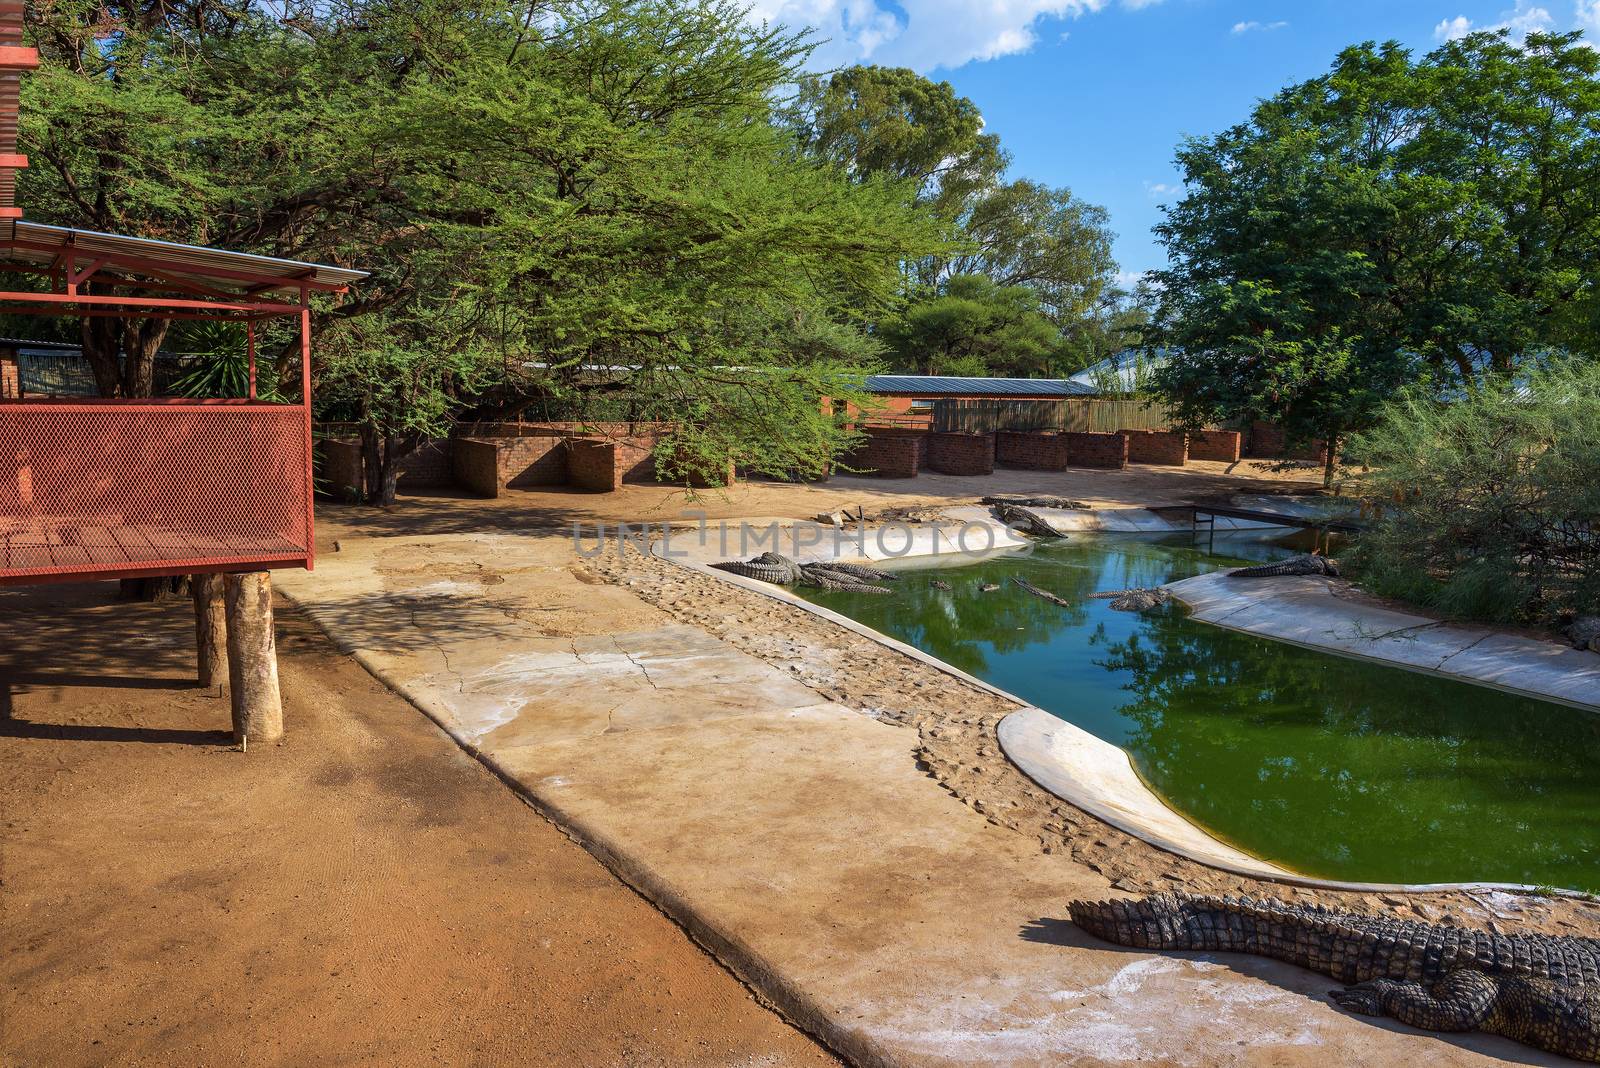 Otjiwarongo, Namibia - April 4, 2019 : Crocodiles relaxing in an artificial lake at the Crocodile Farm in Namibia.